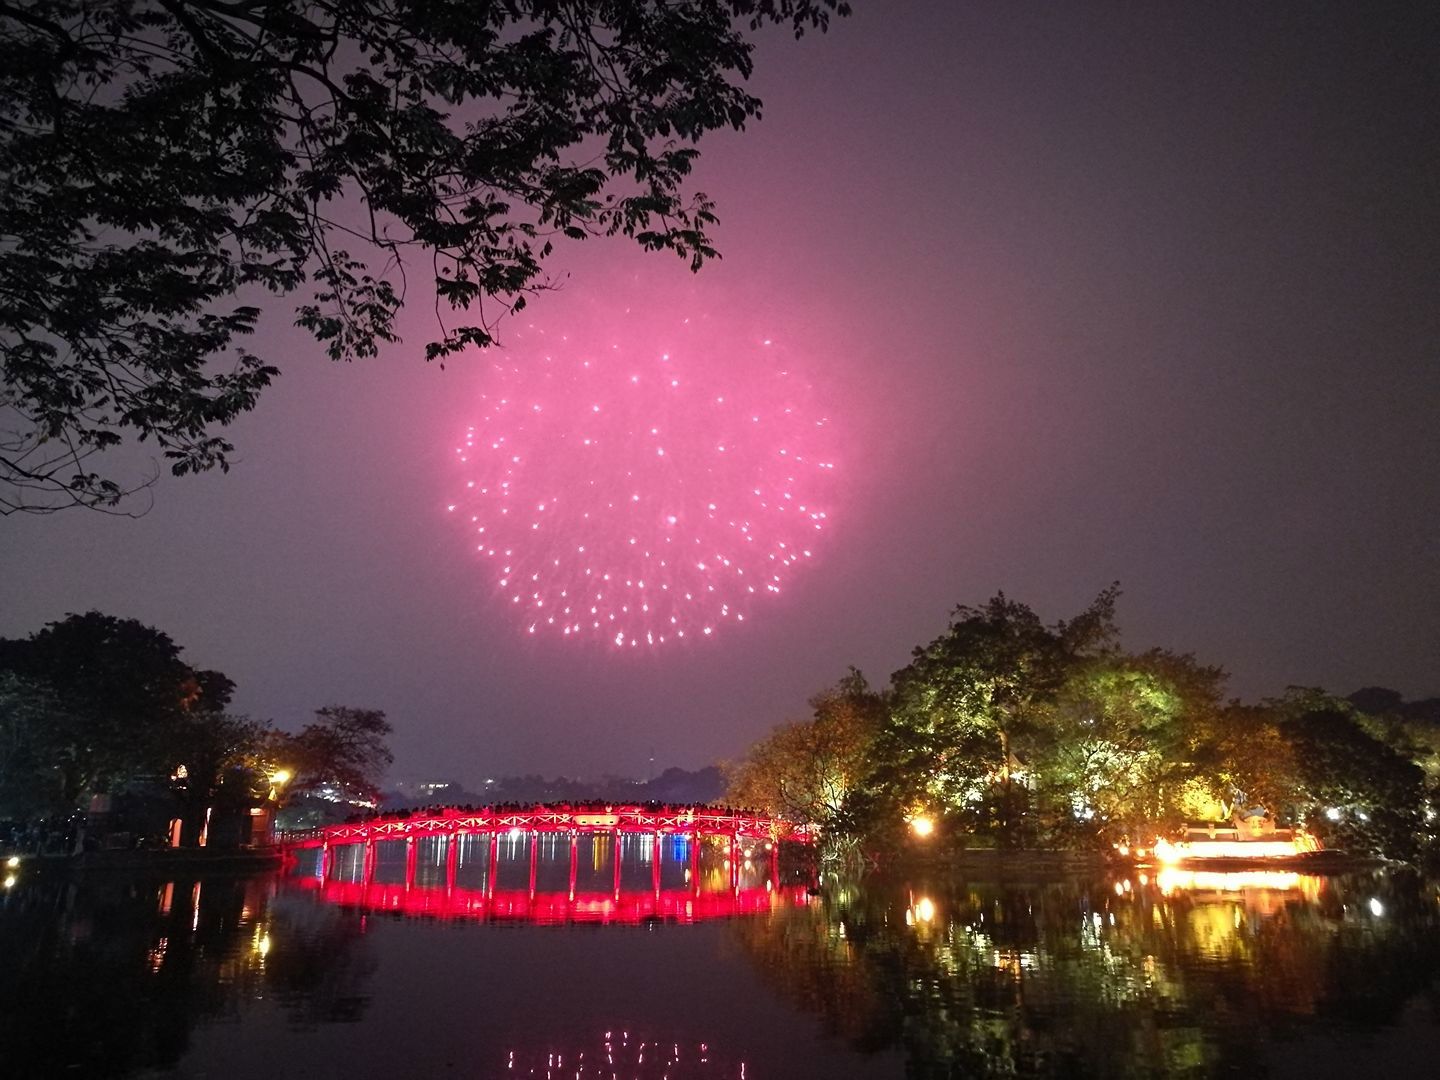 Năm nay, Hà Nội sẽ có 30 điểm bắn pháo hoa với 31 trận địa, nhằm tạo không khí vui tươi, phấn khởi cho Nhân dân Thủ đô dịp đón Tết cổ truyền.